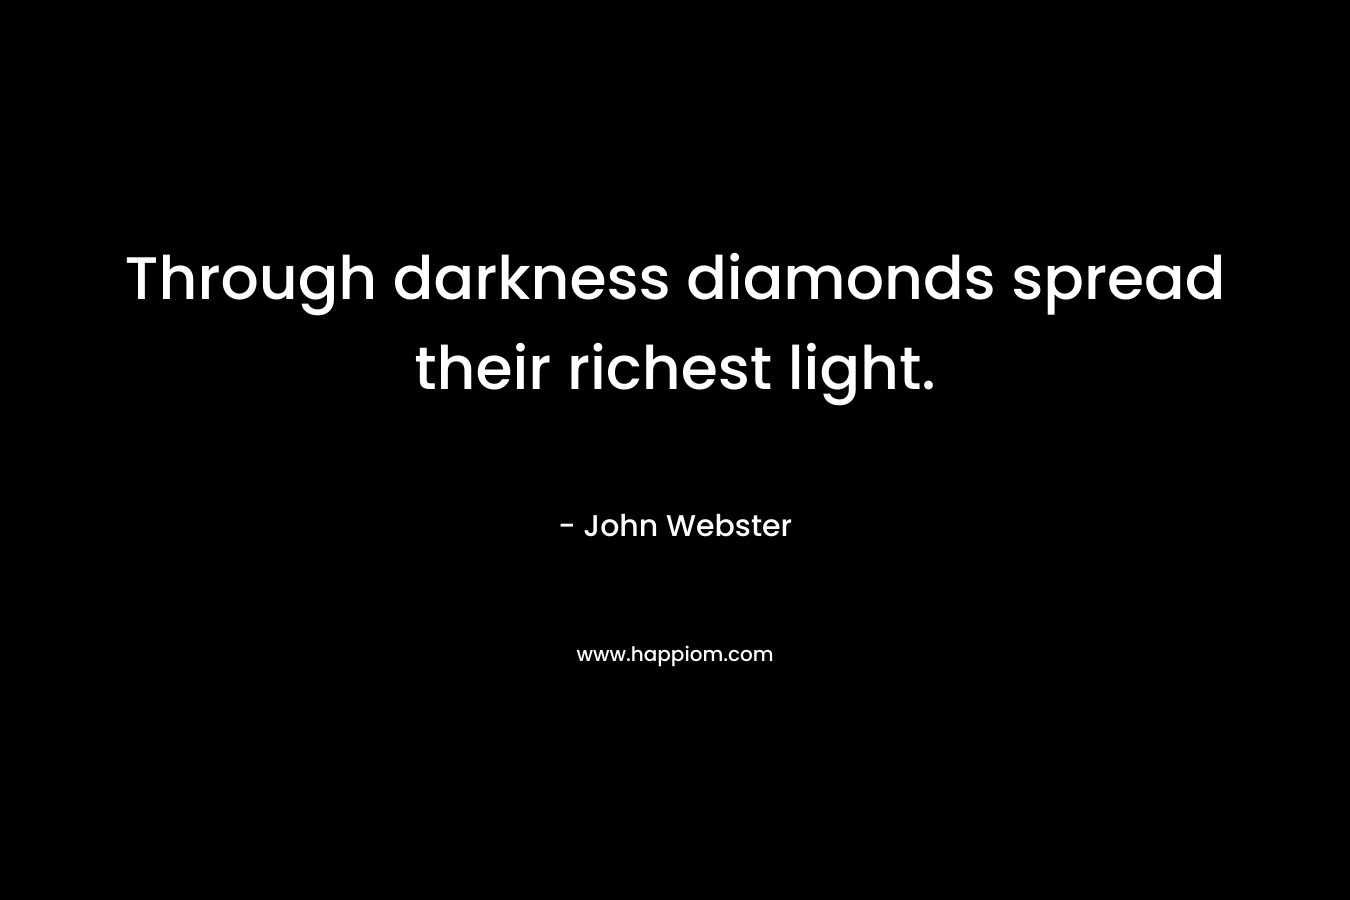 Through darkness diamonds spread their richest light.